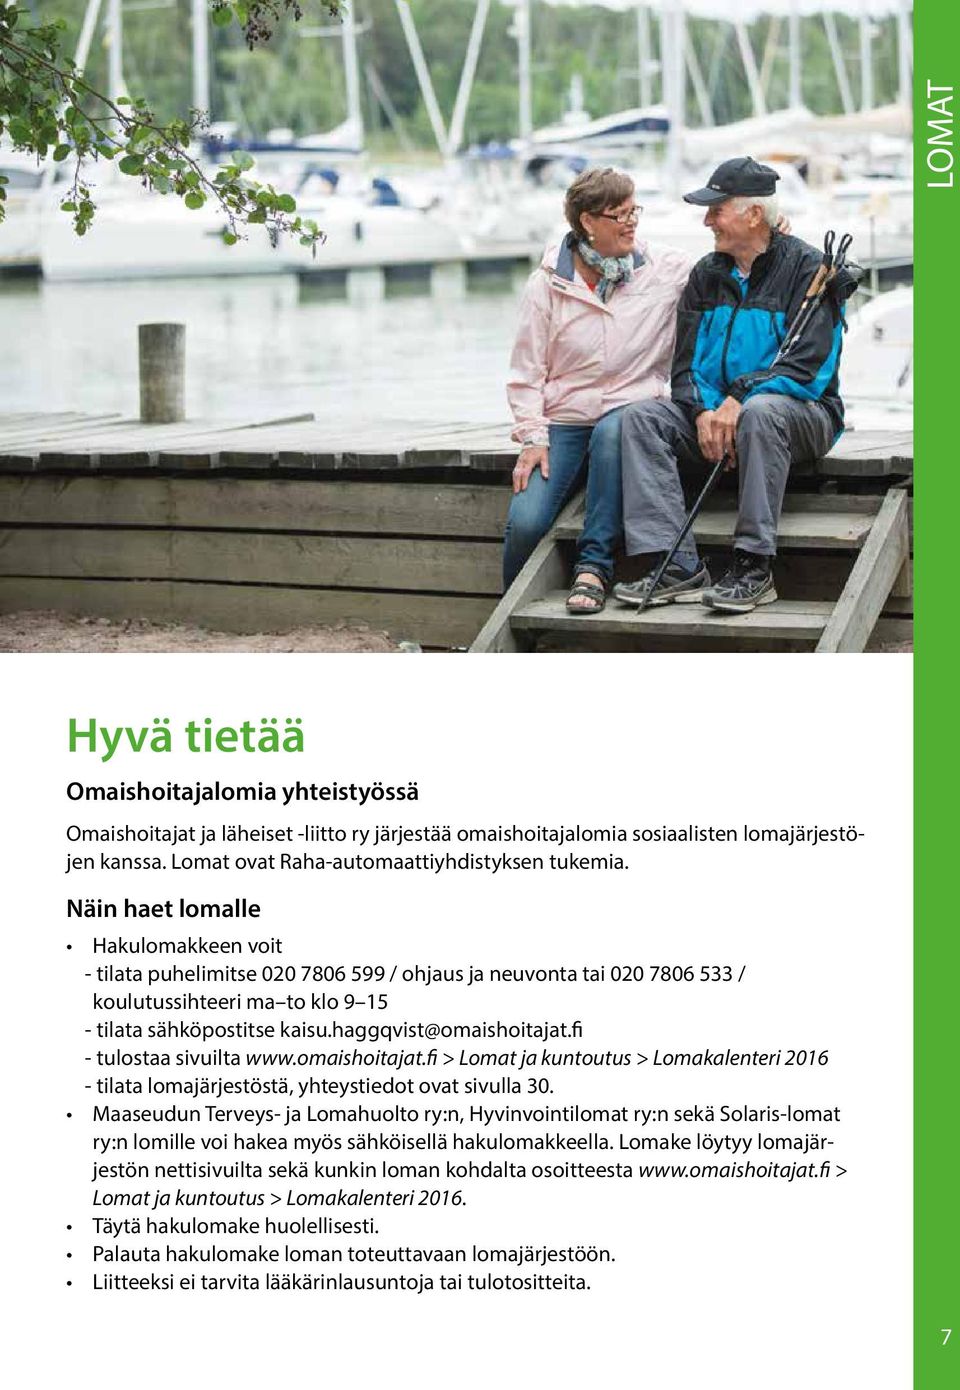 fi - tulostaa sivuilta www.omaishoitajat.fi > Lomat ja kuntoutus > Lomakalenteri 2016 - tilata lomajärjestöstä, yhteystiedot ovat sivulla 30.